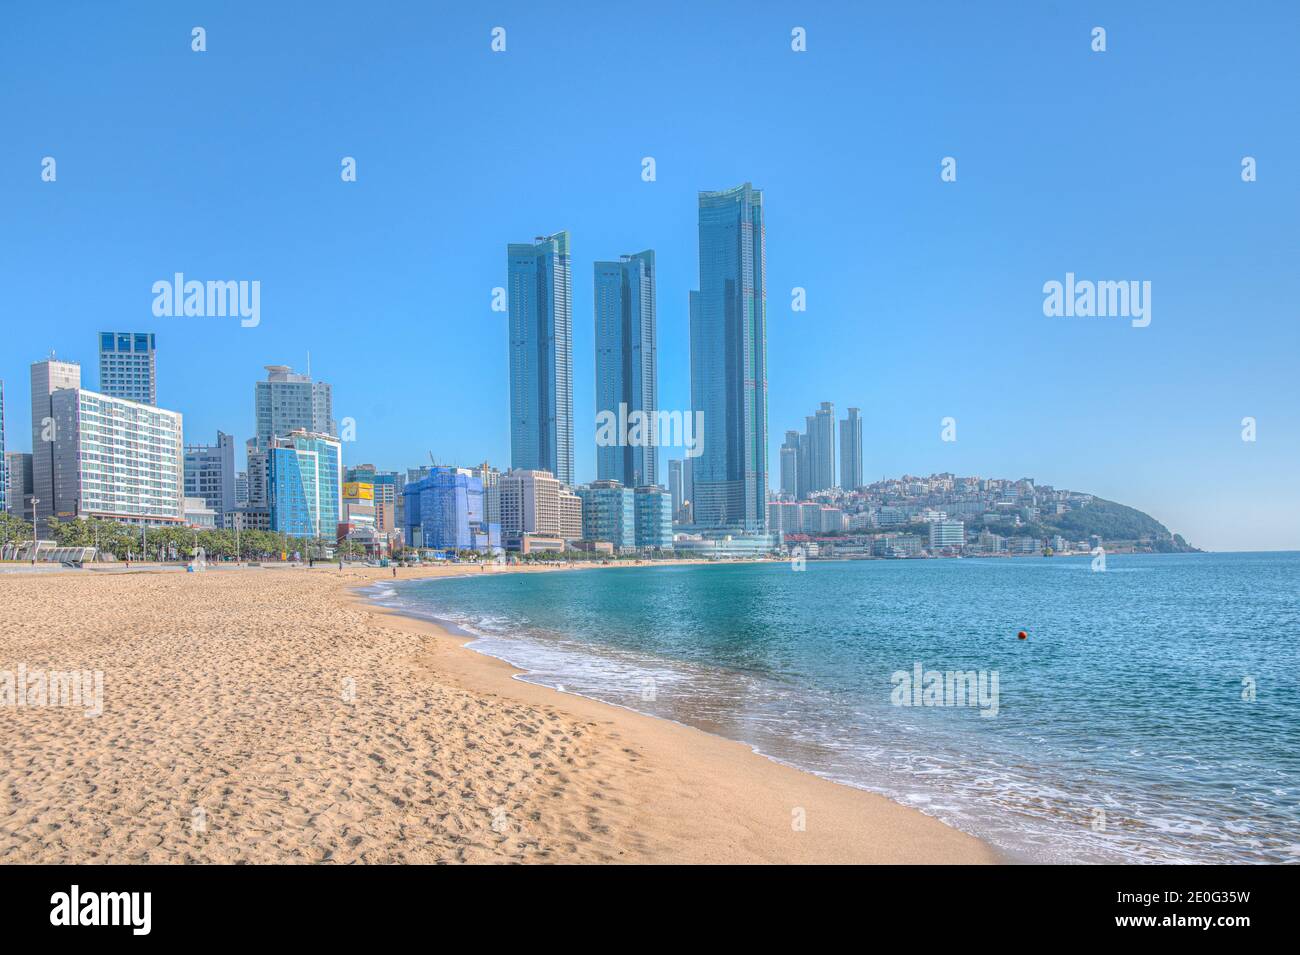 Haeundae Beach in Busan, republic of Korea Stock Photo